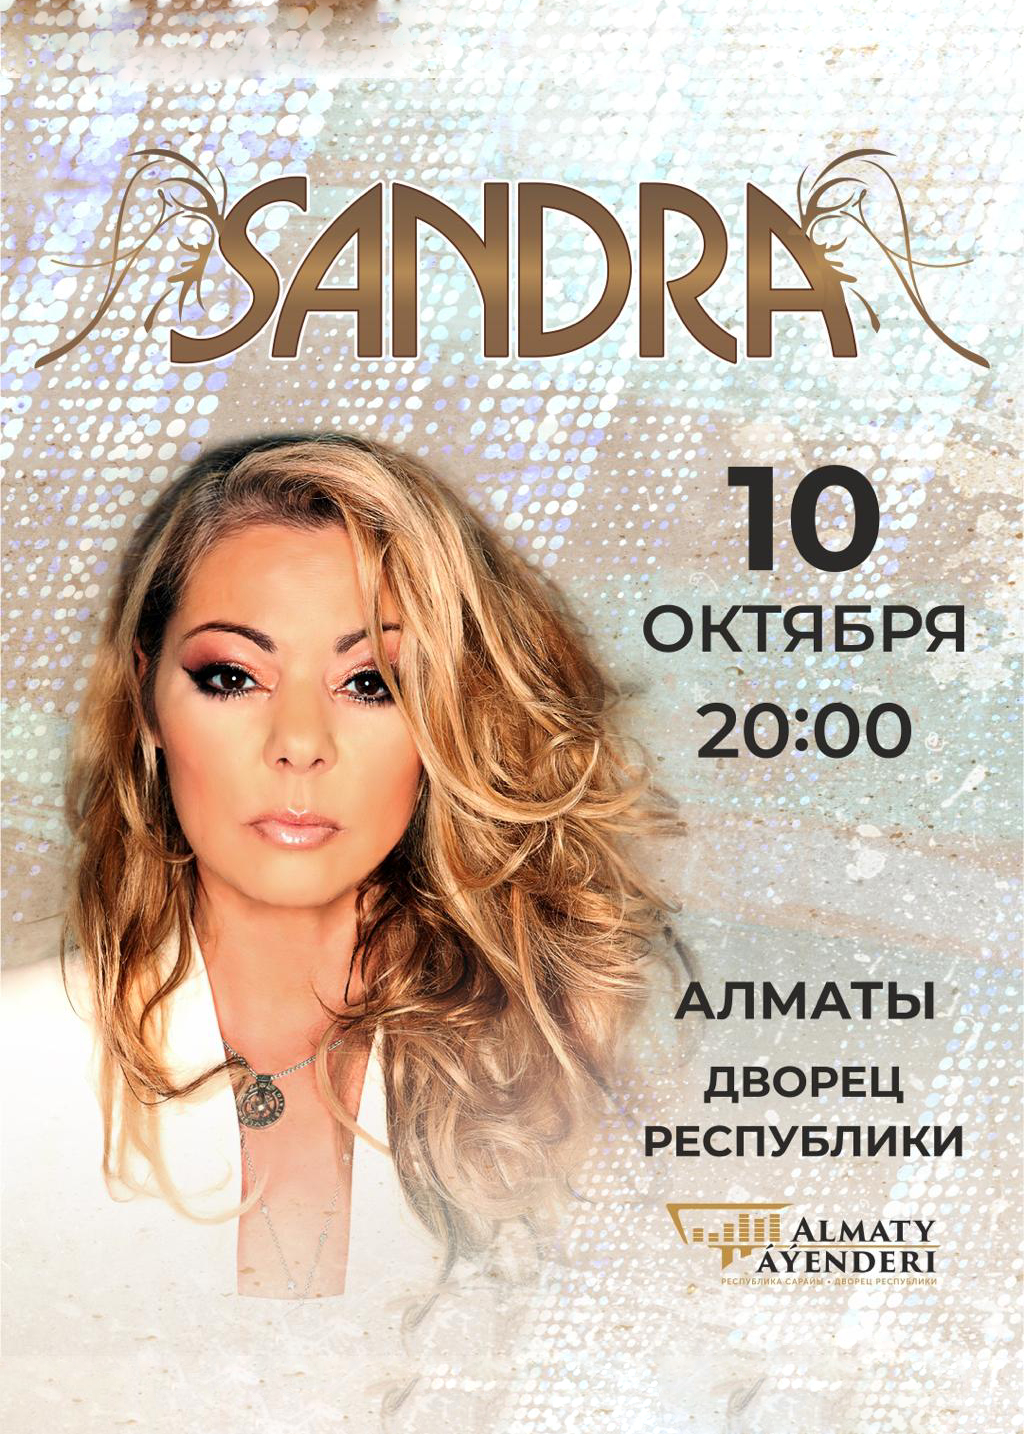 Sandra in Almaty